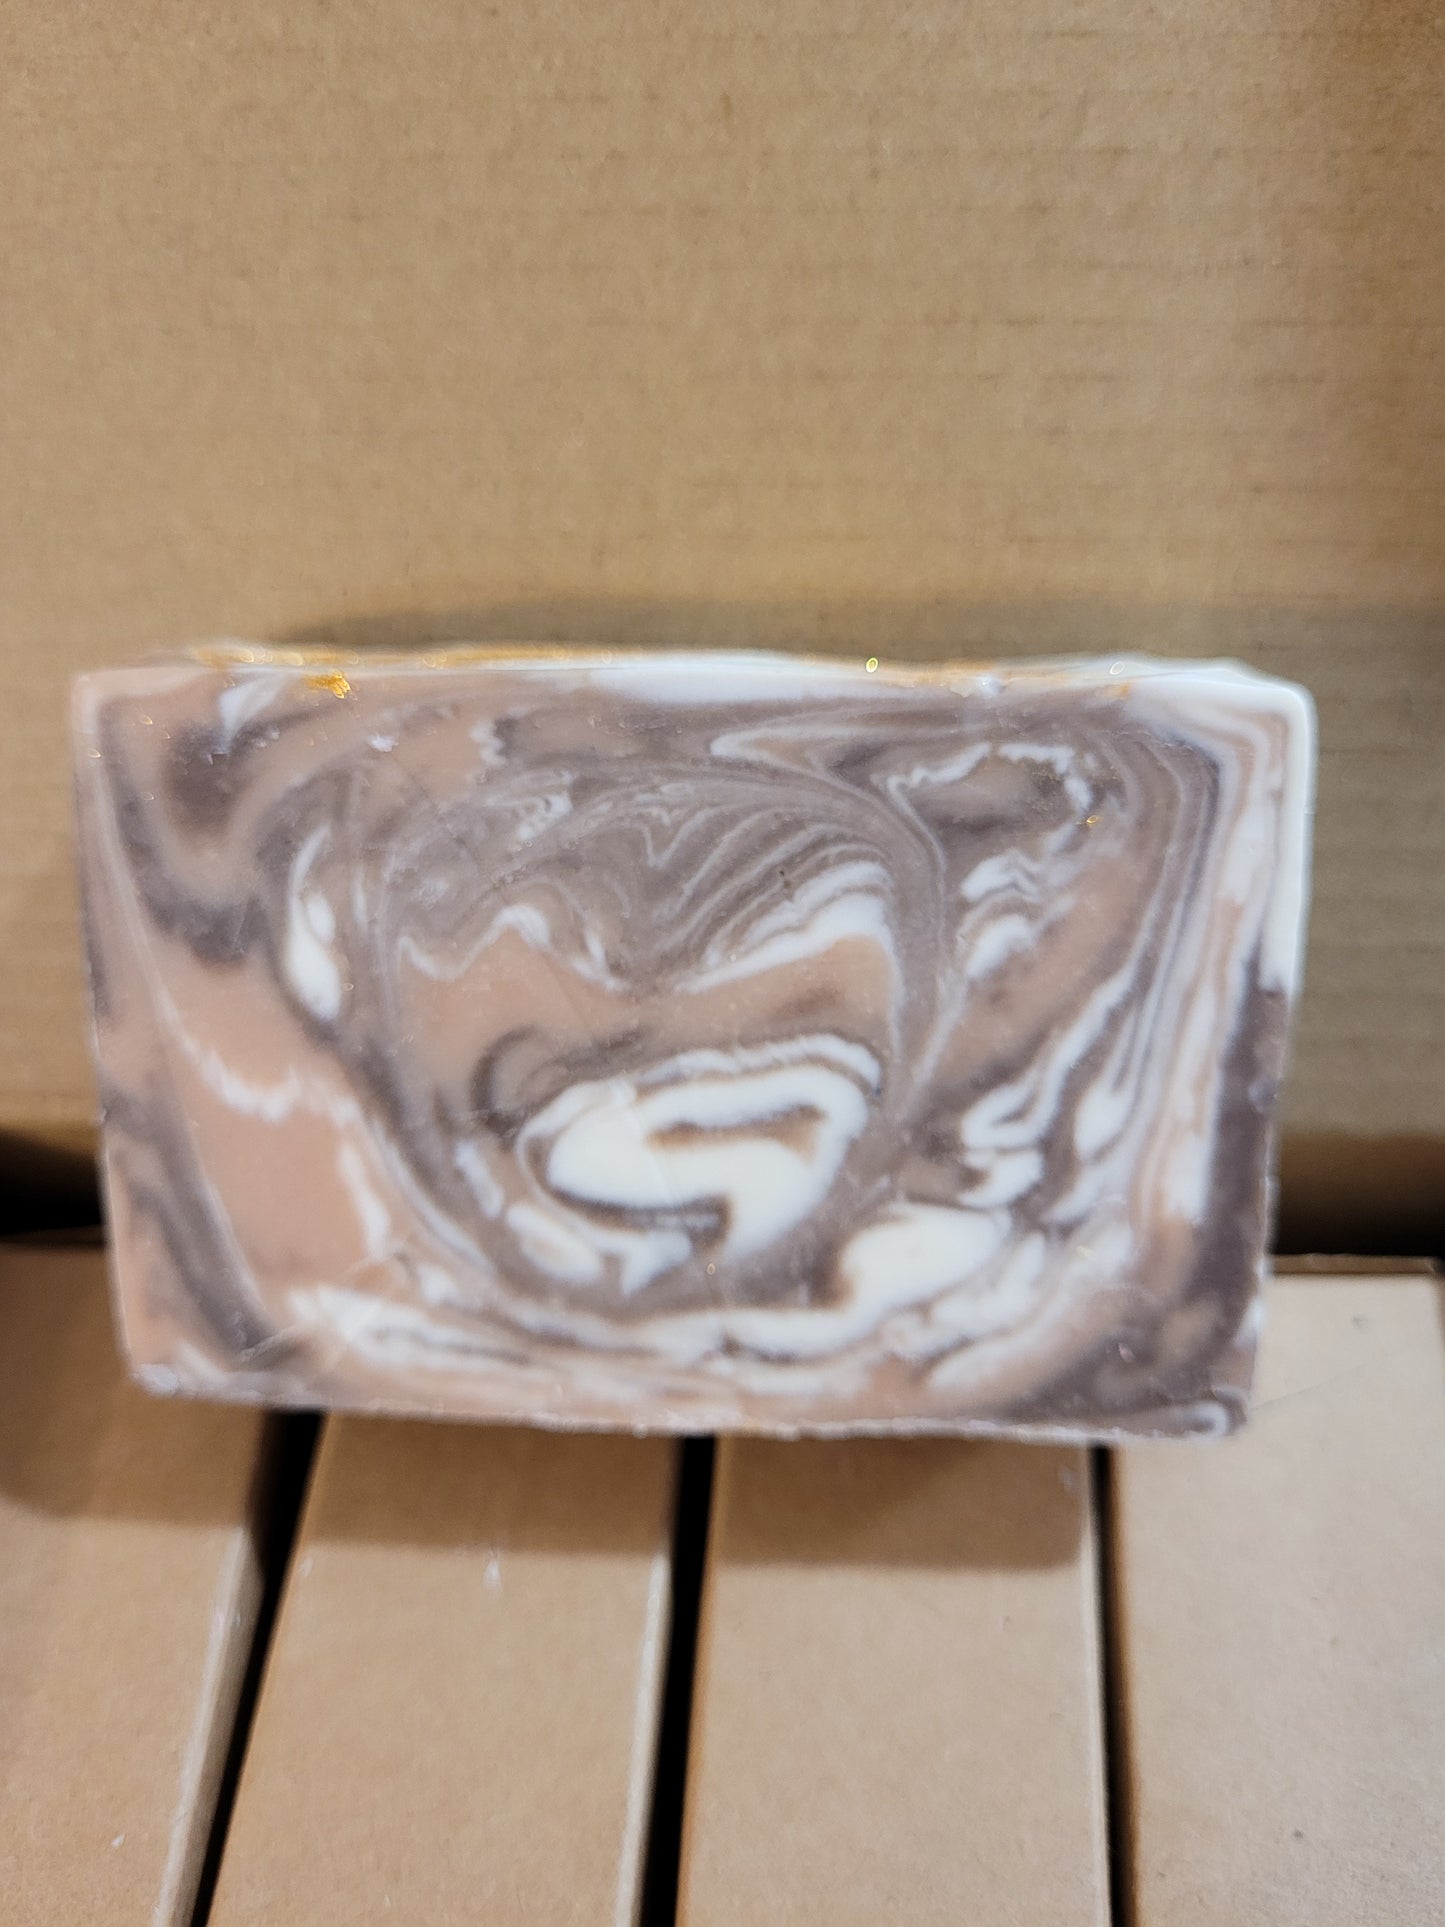 Soap (cold process bar)